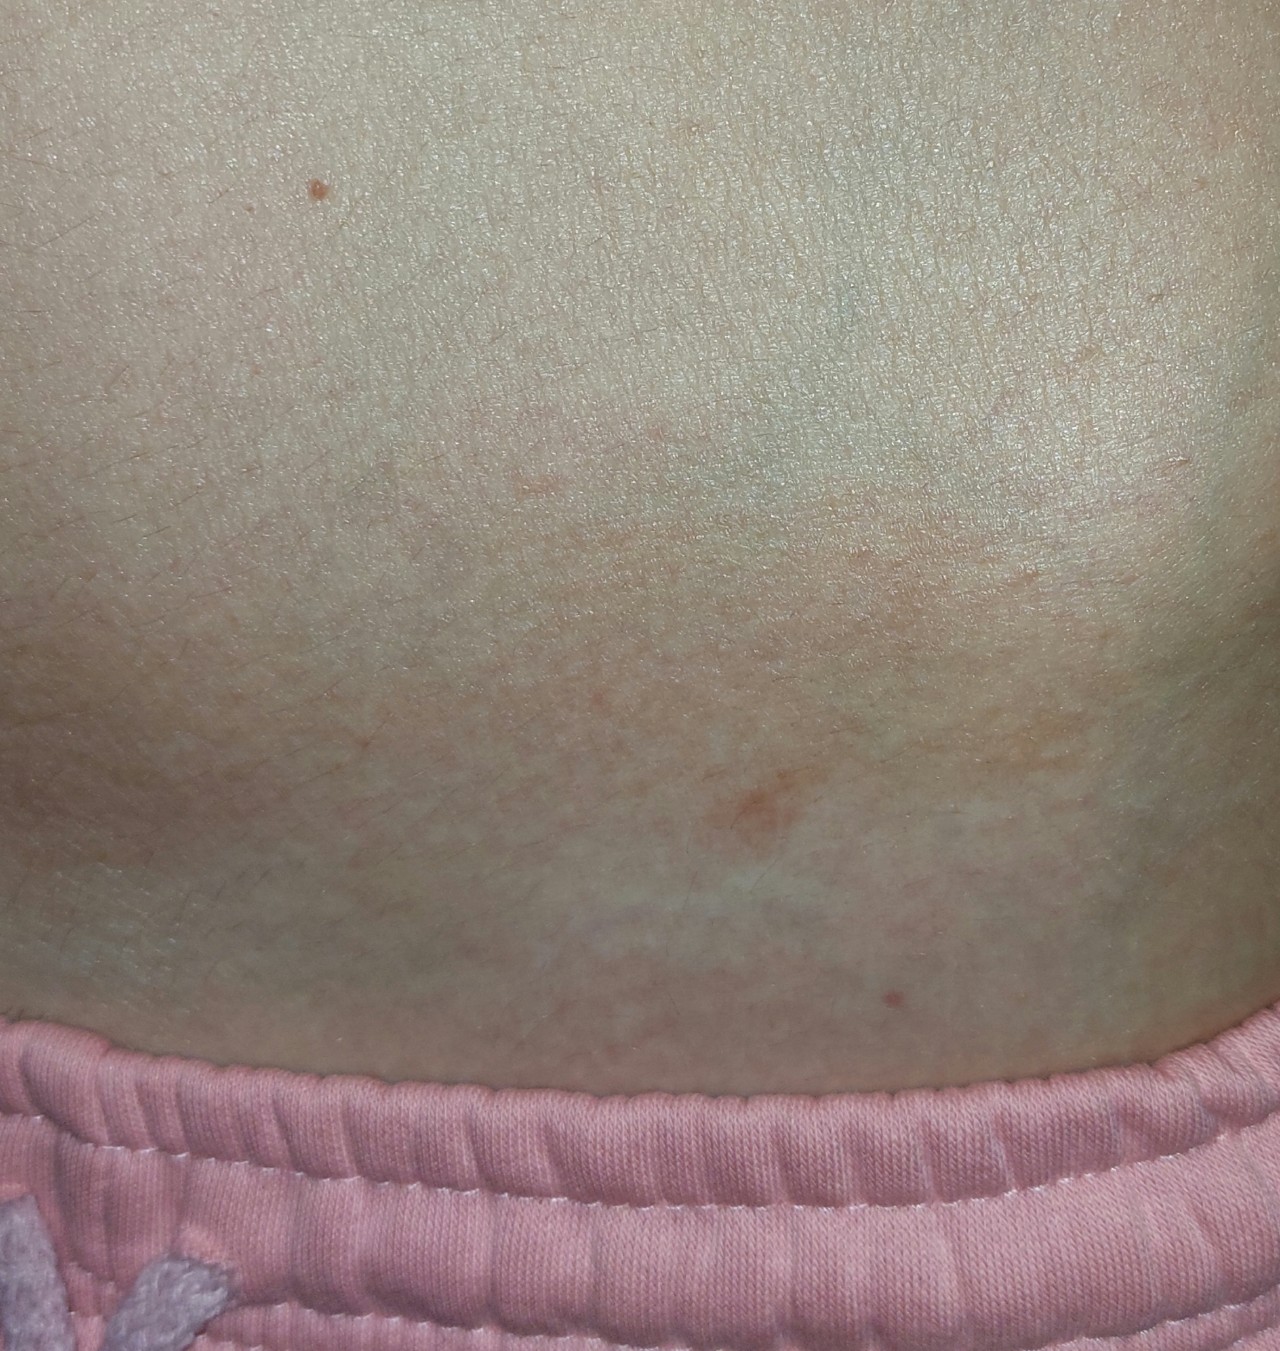 шелушится кожа груди при беременности фото 115